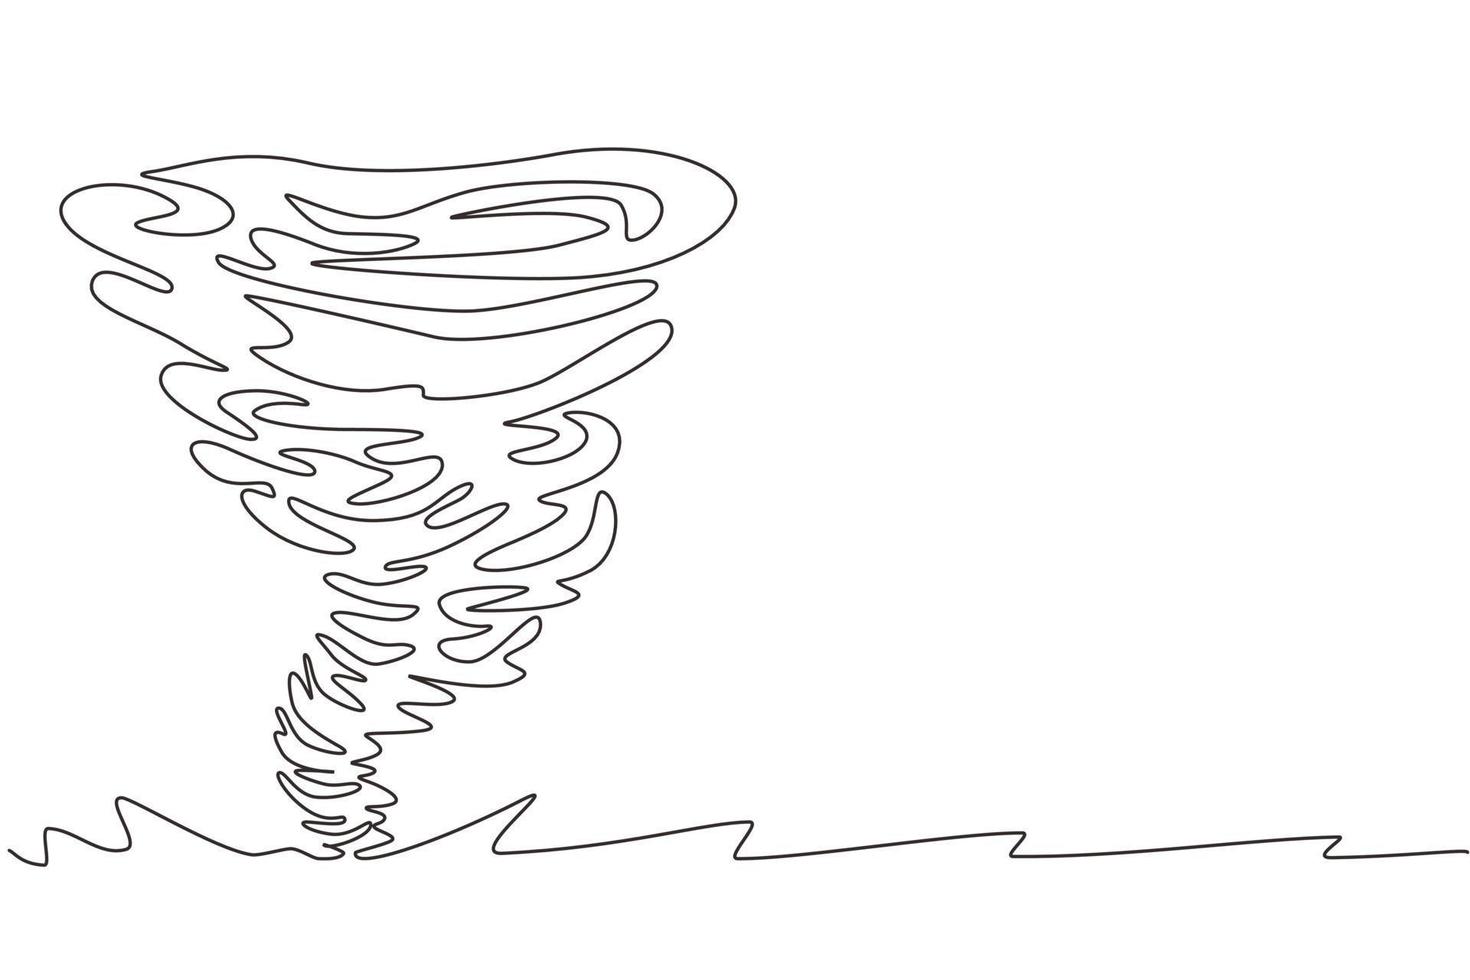 tornado d'acqua di disegno a linea continua singola. twister rotante. spruzzata di vortice d'acqua e forma contorta. vortice d'acqua, vortice su bianco isolato. illustrazione vettoriale di un disegno di linea